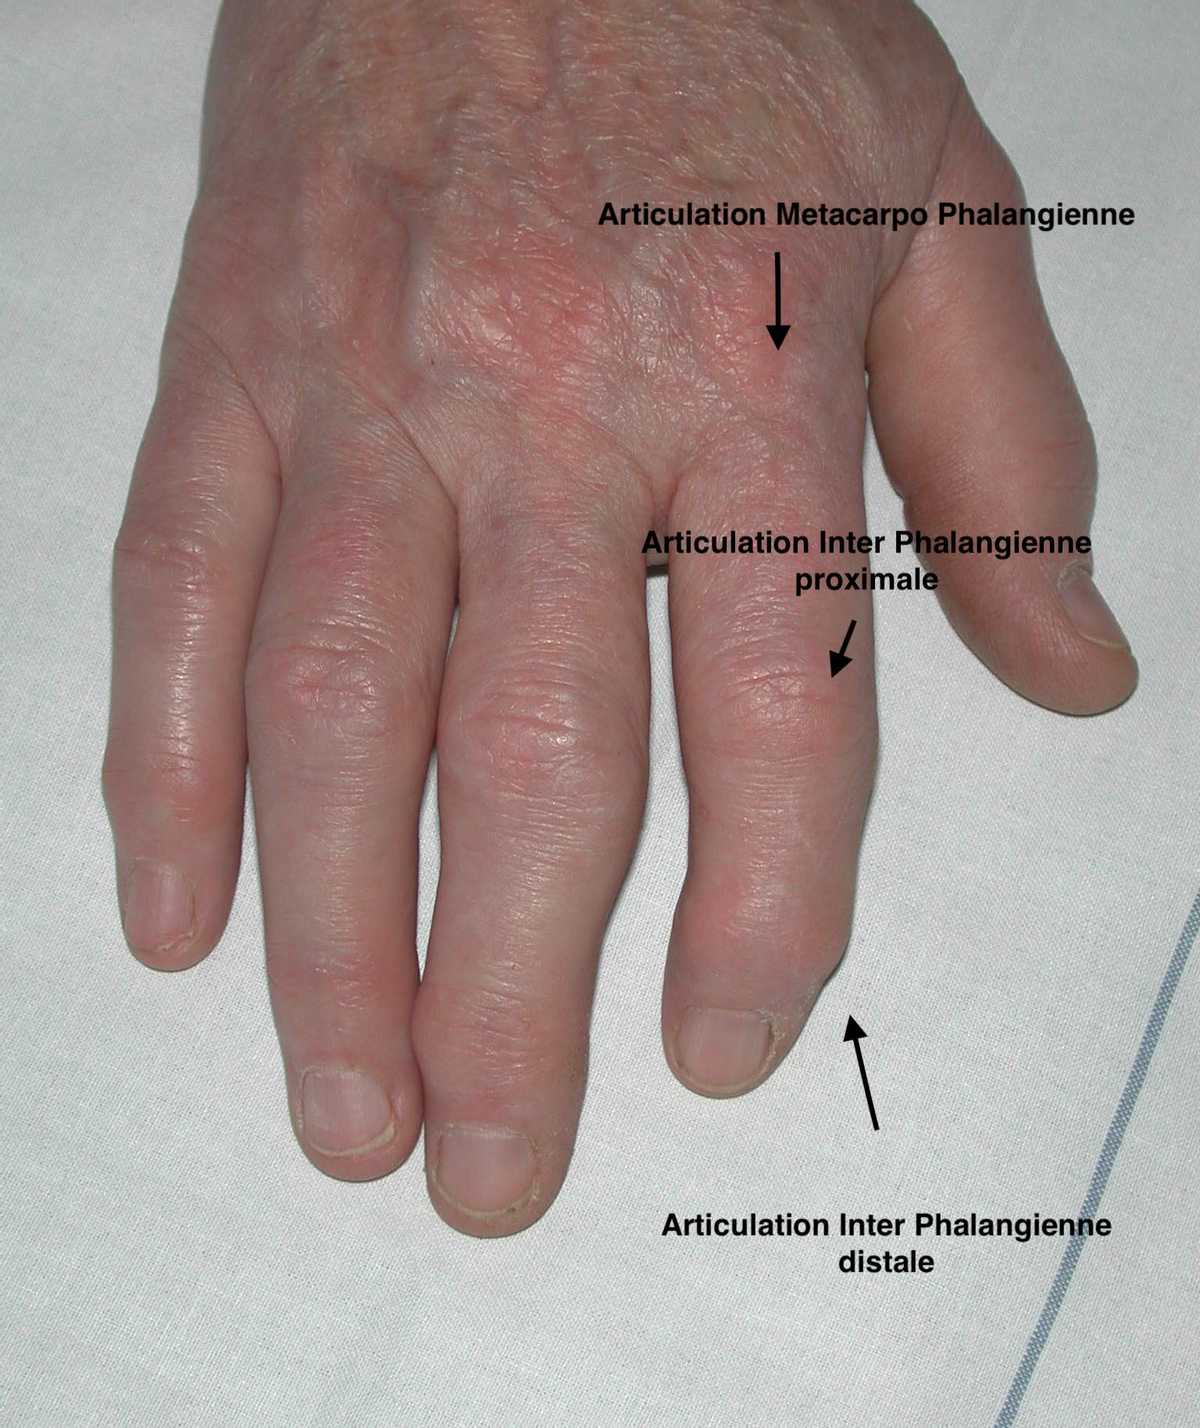 Anatomie des articulations concernées par l'arthrose des doigts